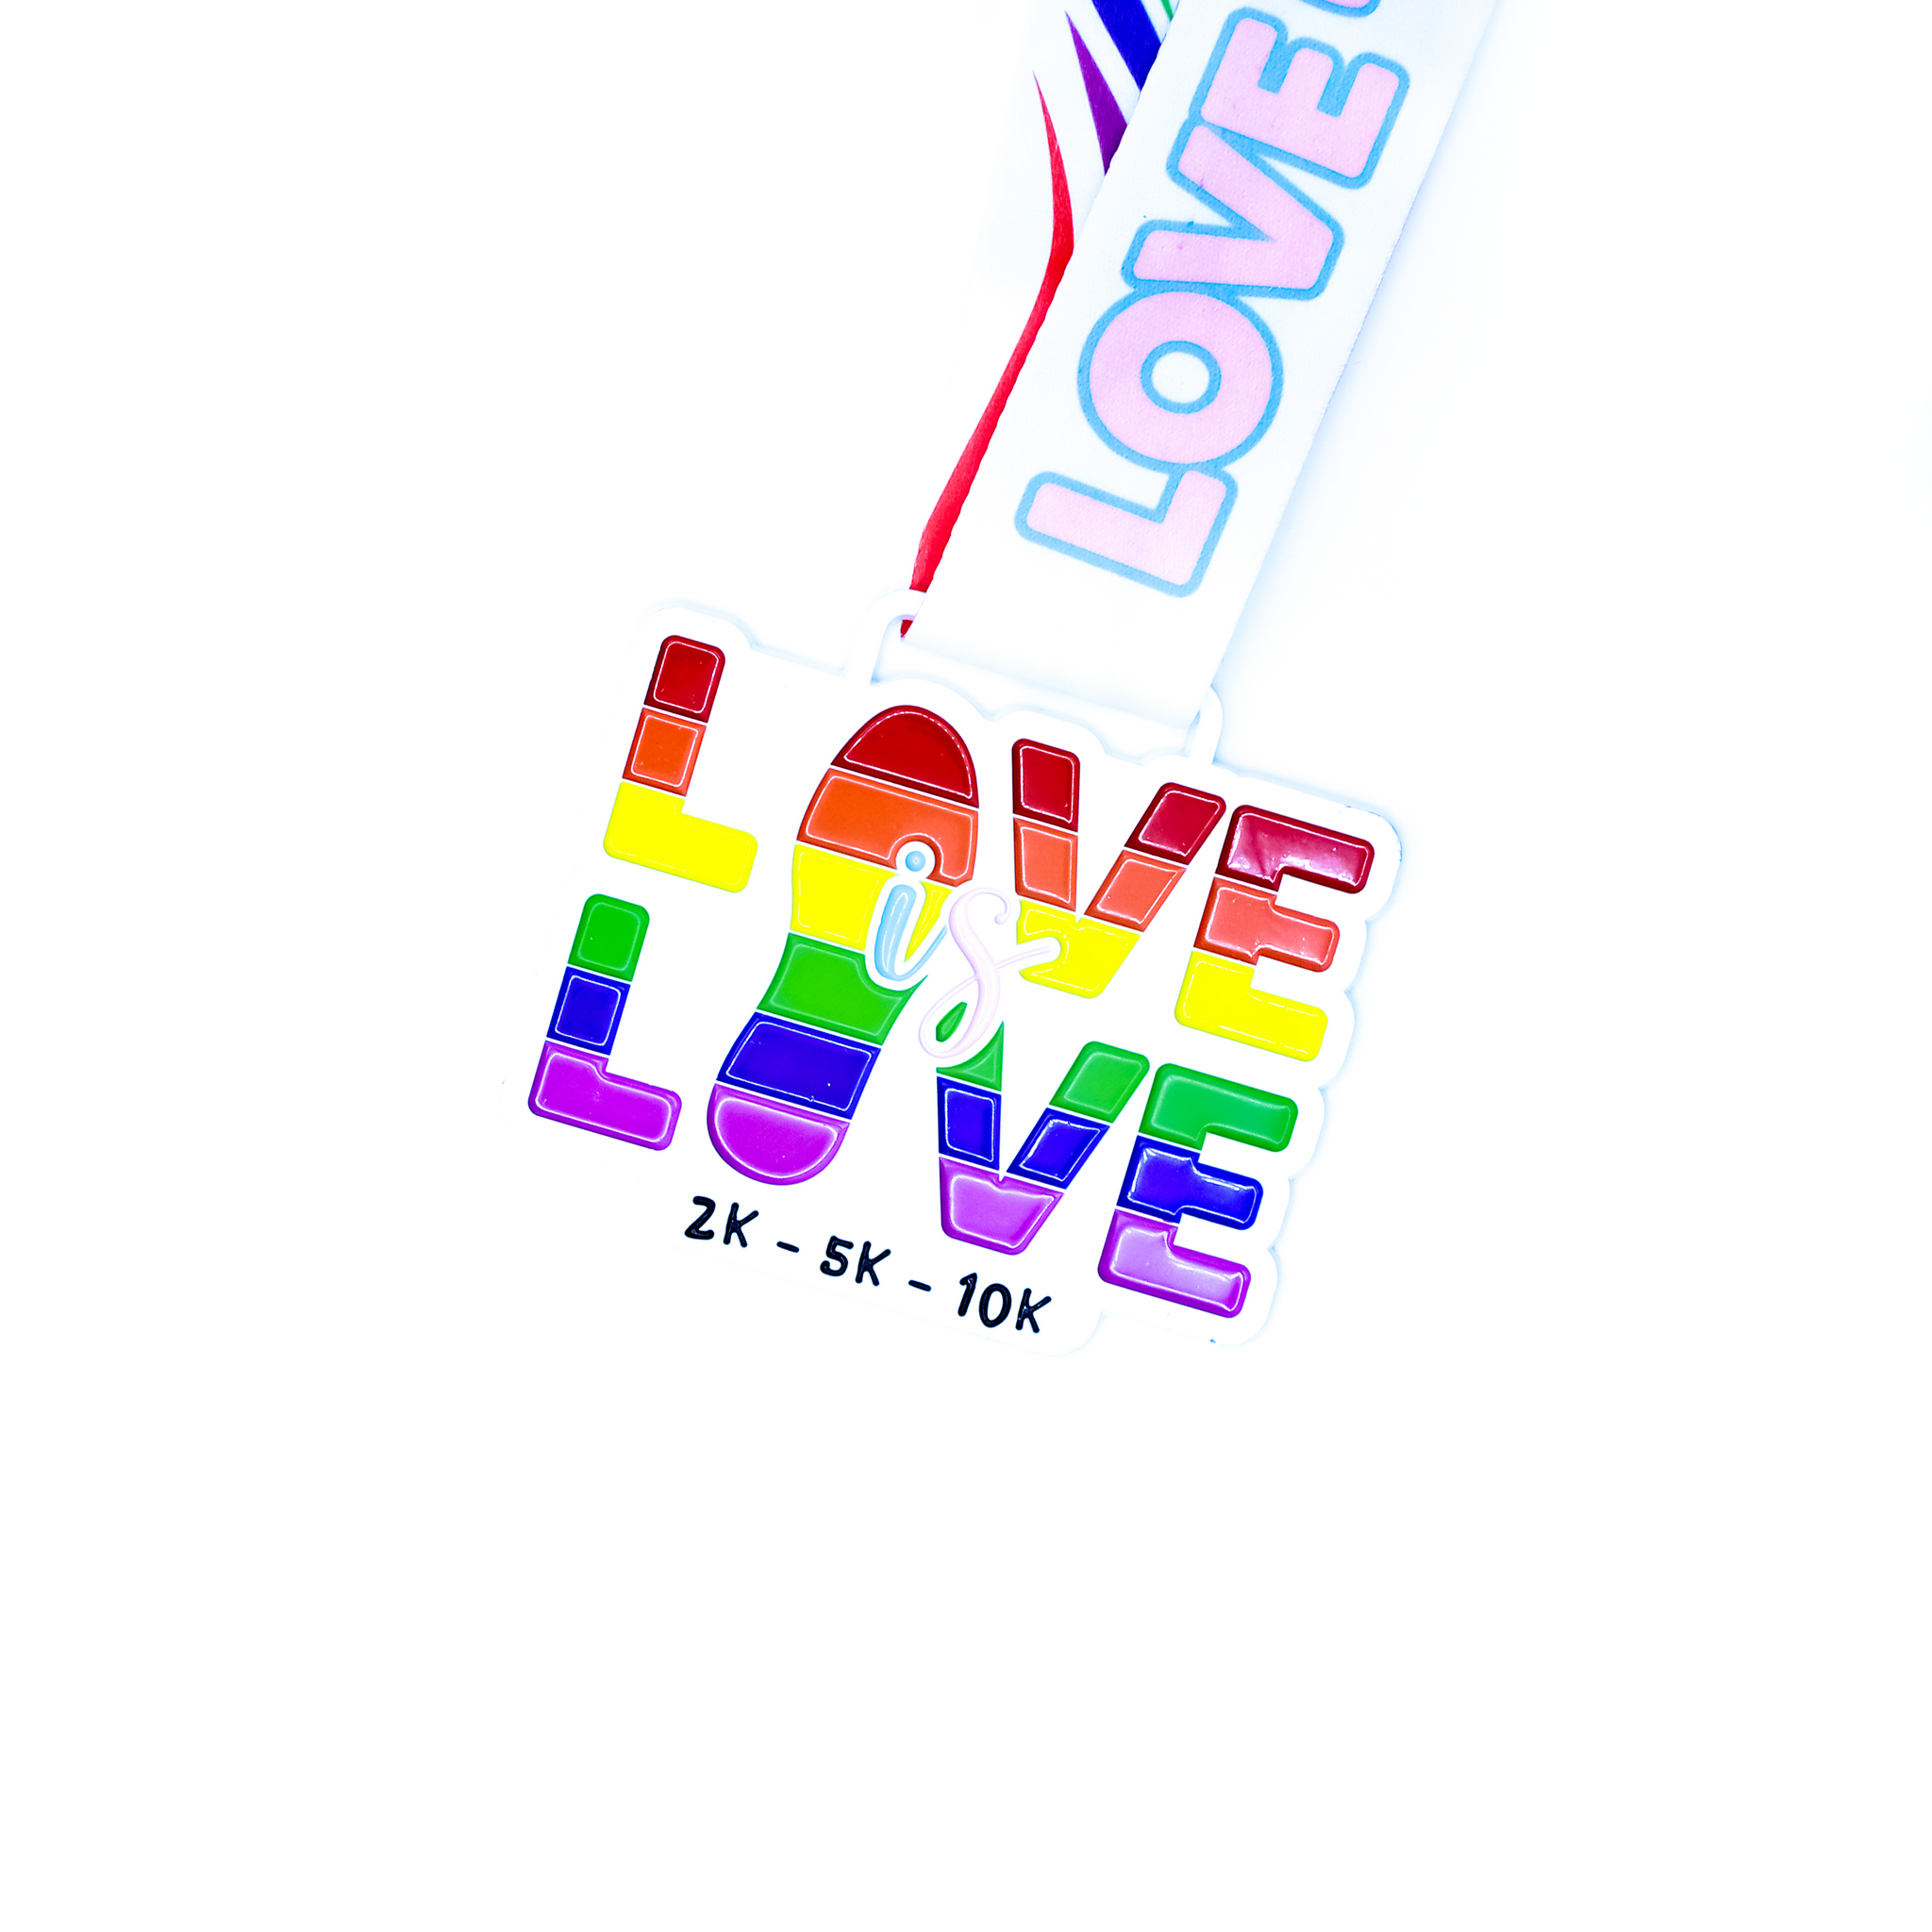 Love is Love 2k | 5k | 10k - Entry + Medal